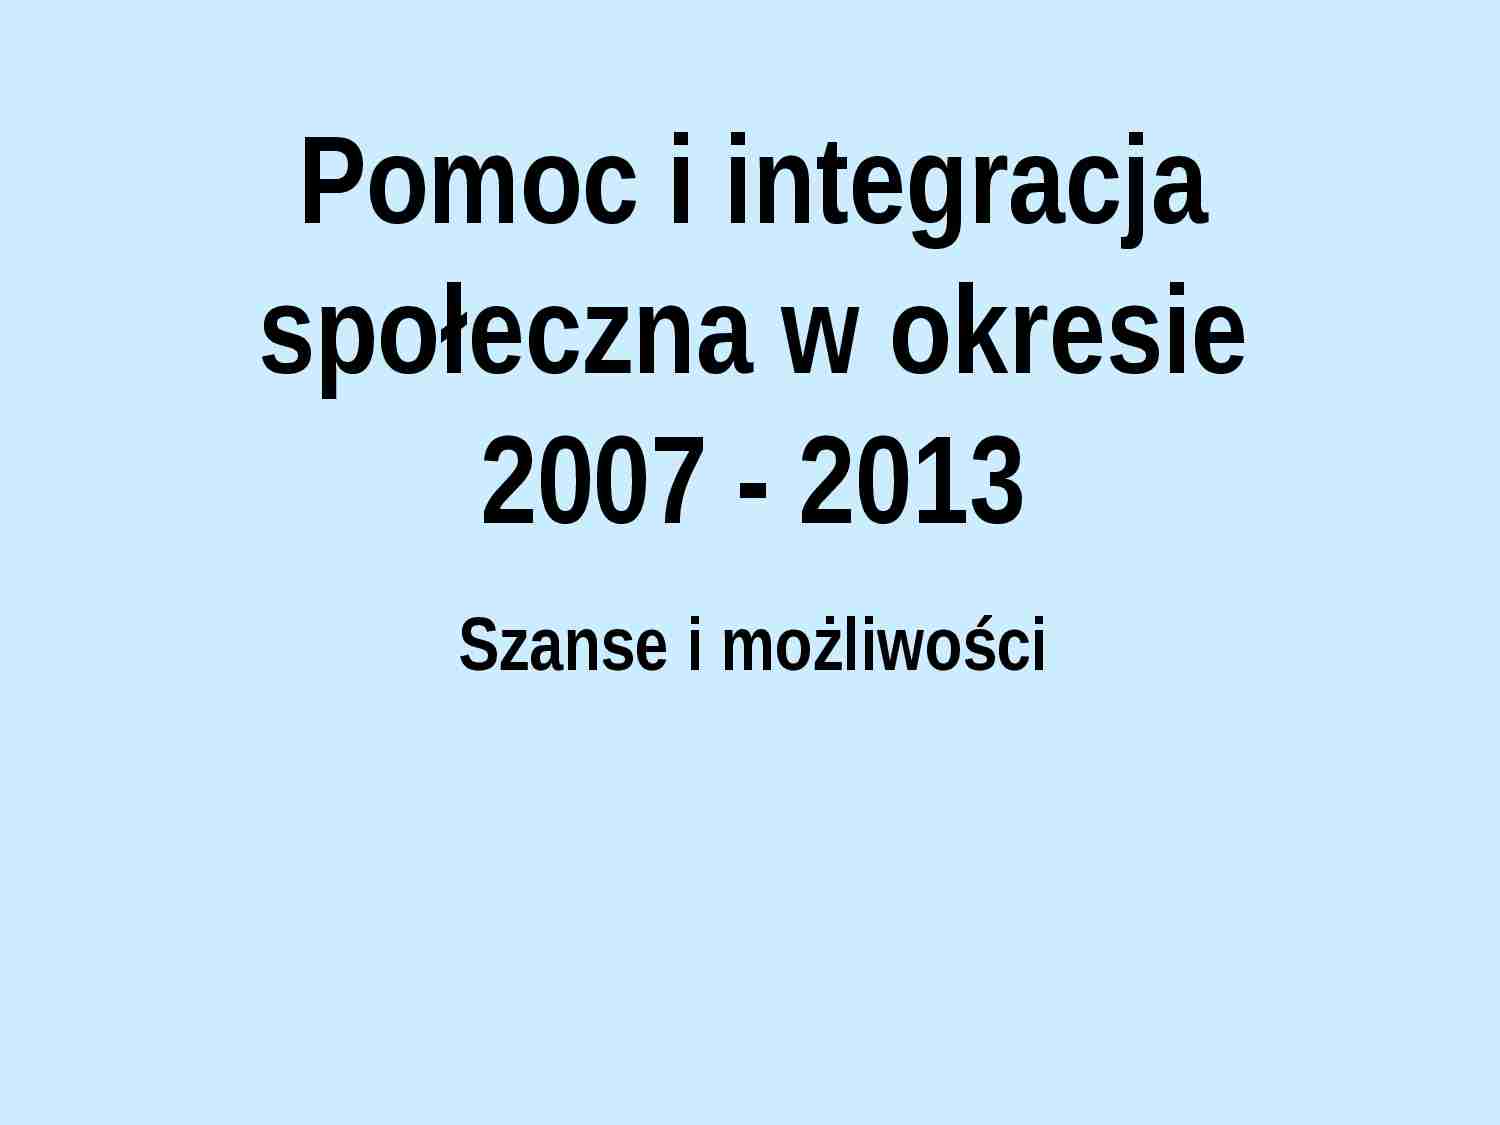 Pomoc i integracja społeczna w okresie 2007-2013 - prezentacja. - strona 1